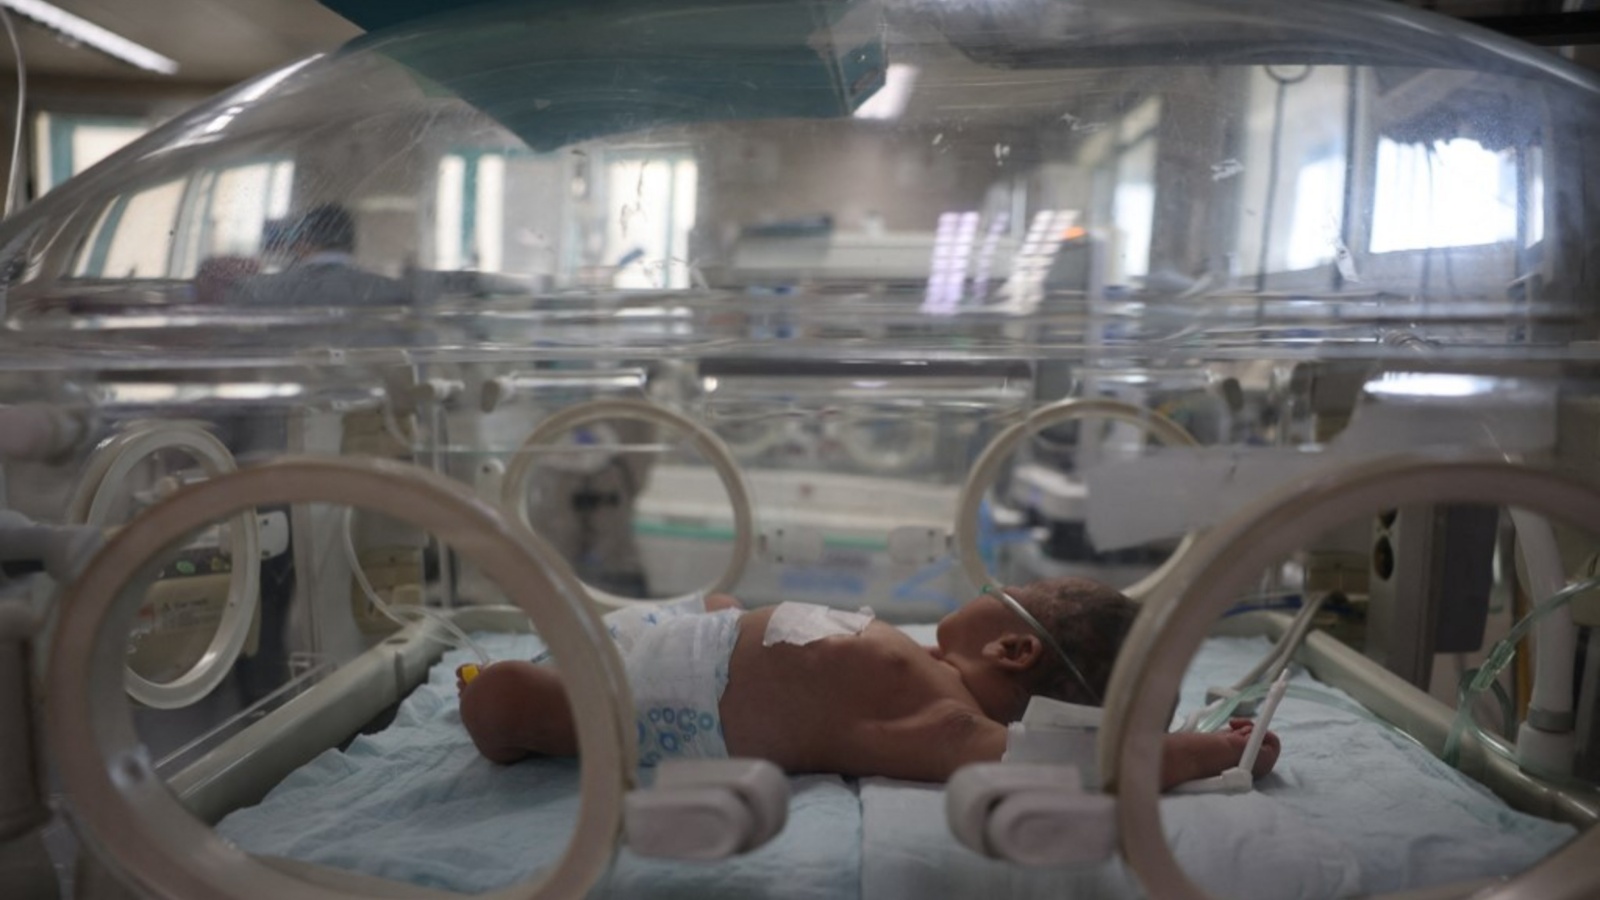 لا رعاية طبية متوفرة لحديثي الولادة في غزة بسبب نقص الإمدادات. أرشيفية